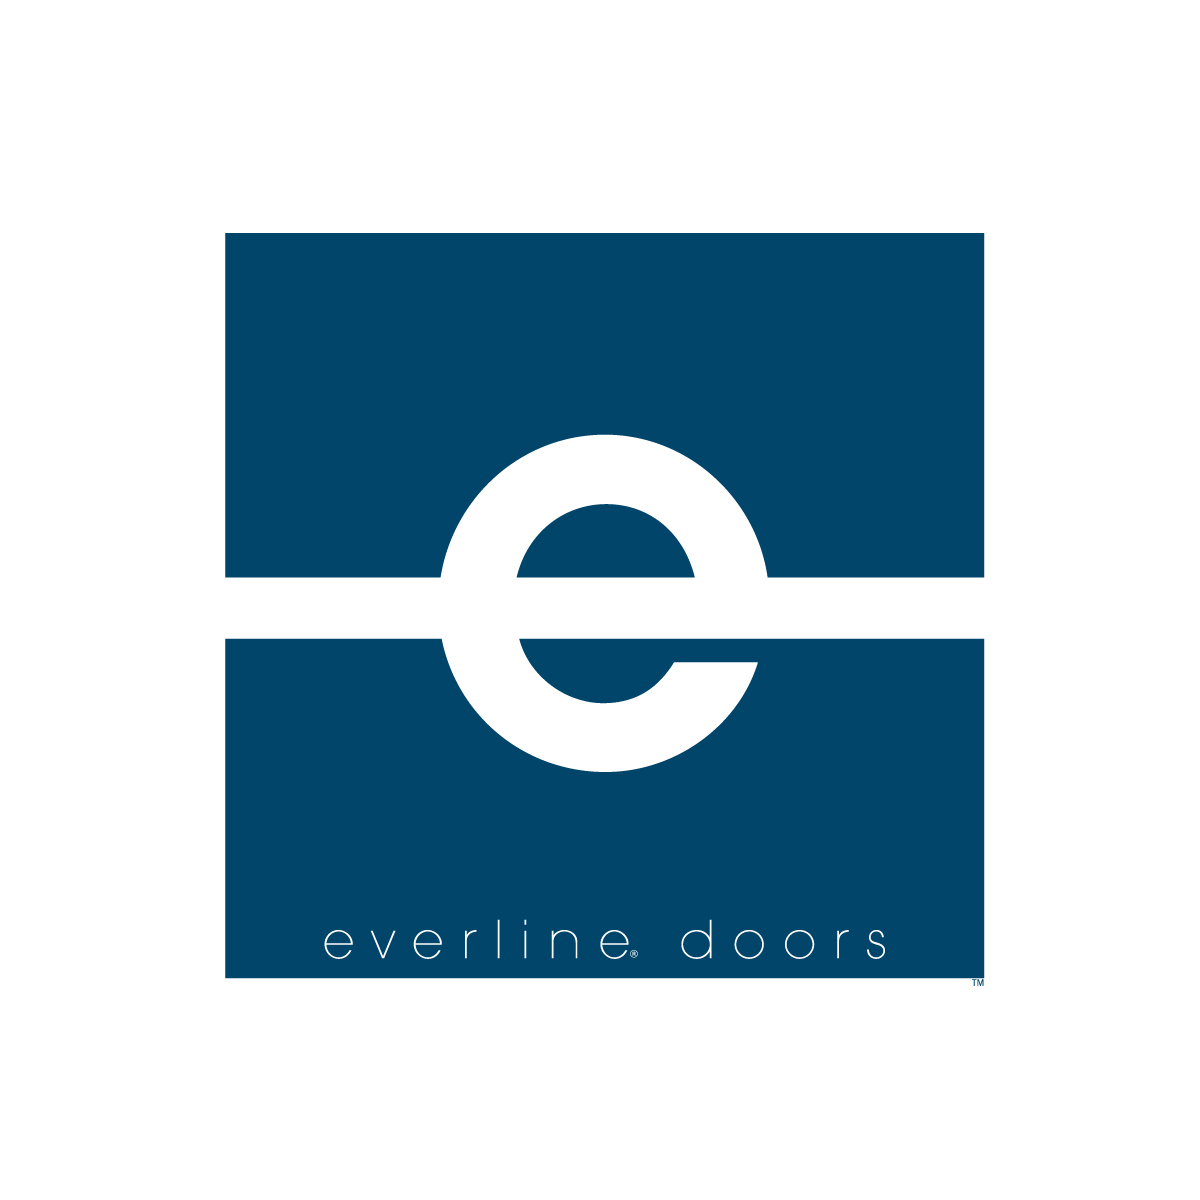 Everline Doors monogram logo